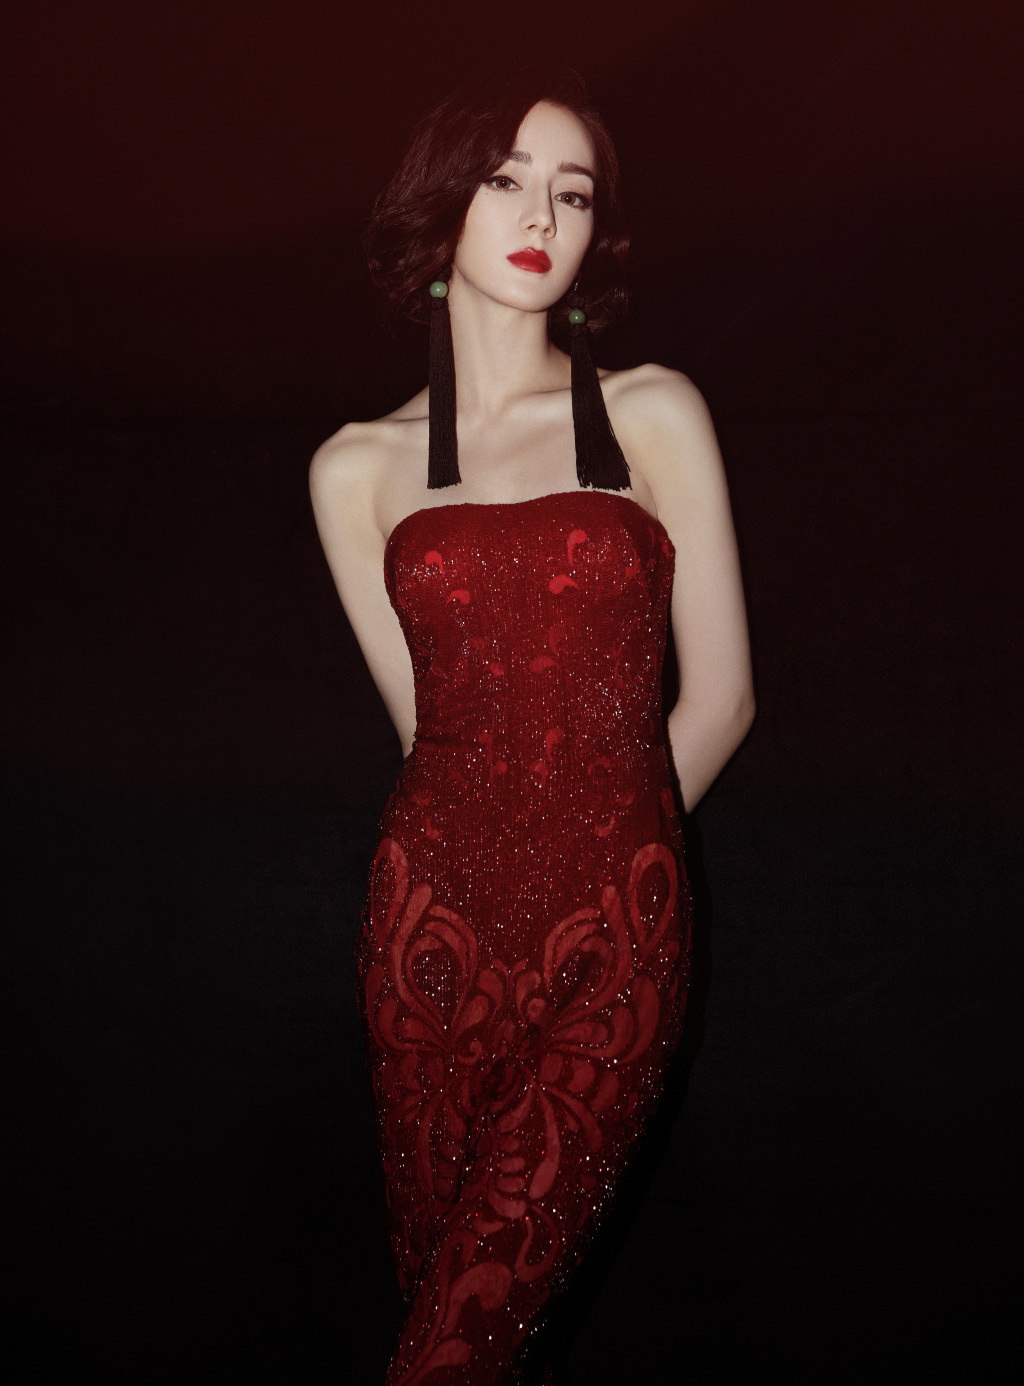 迪丽热巴红色礼服优雅性感写真